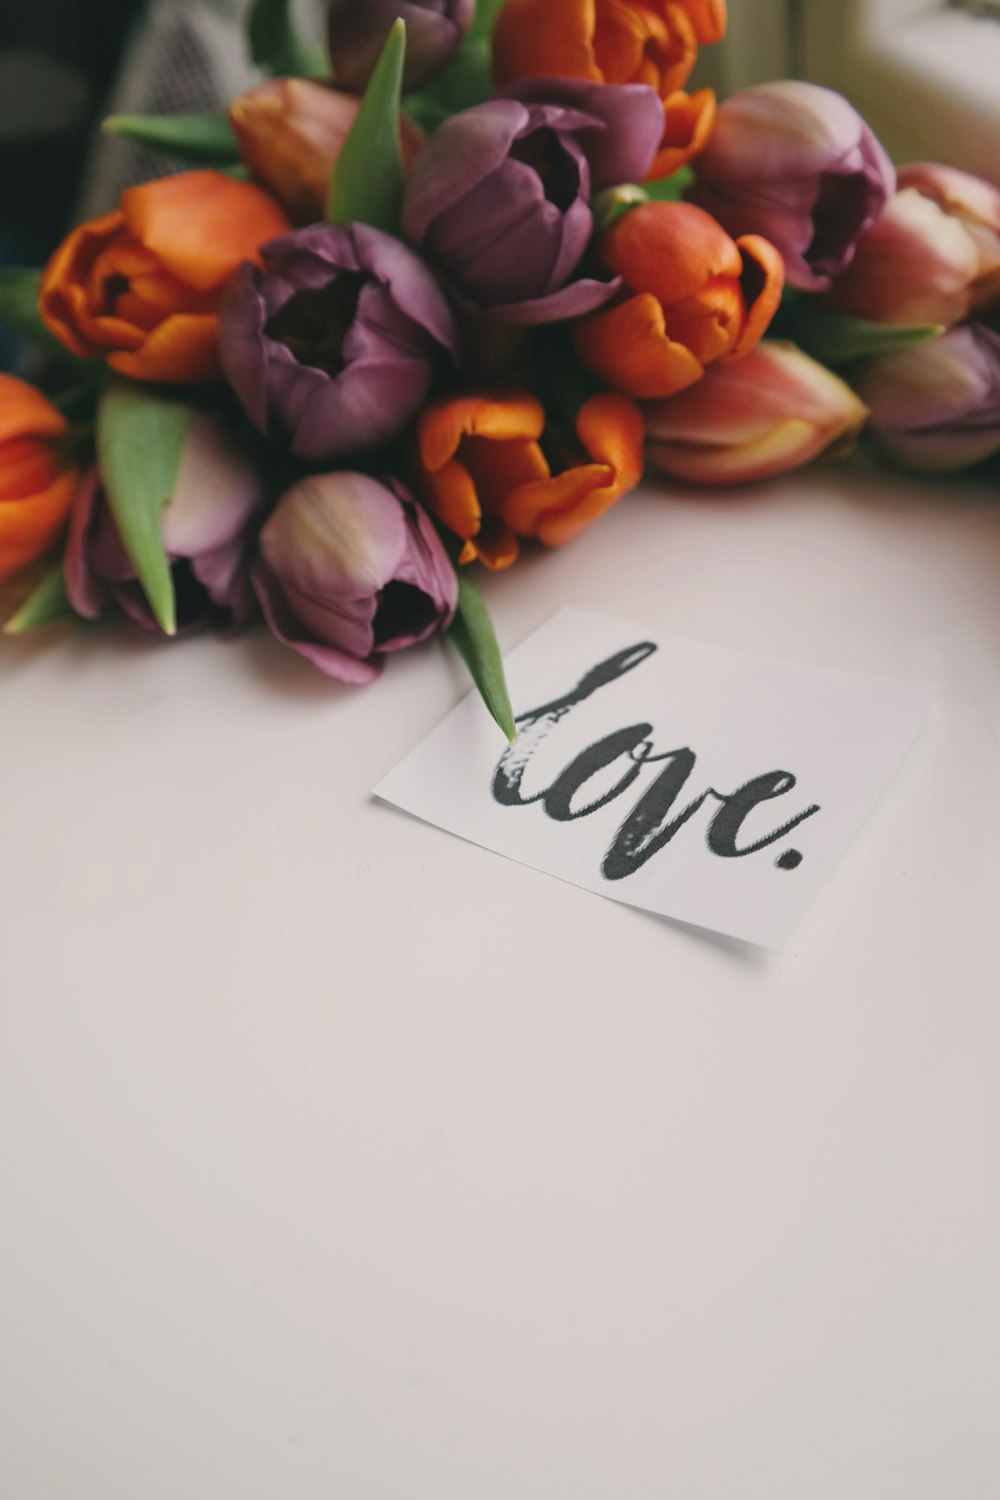 Ramo de tulipanes, junto a un trozo de papel que dice "amor" en letra cursiva